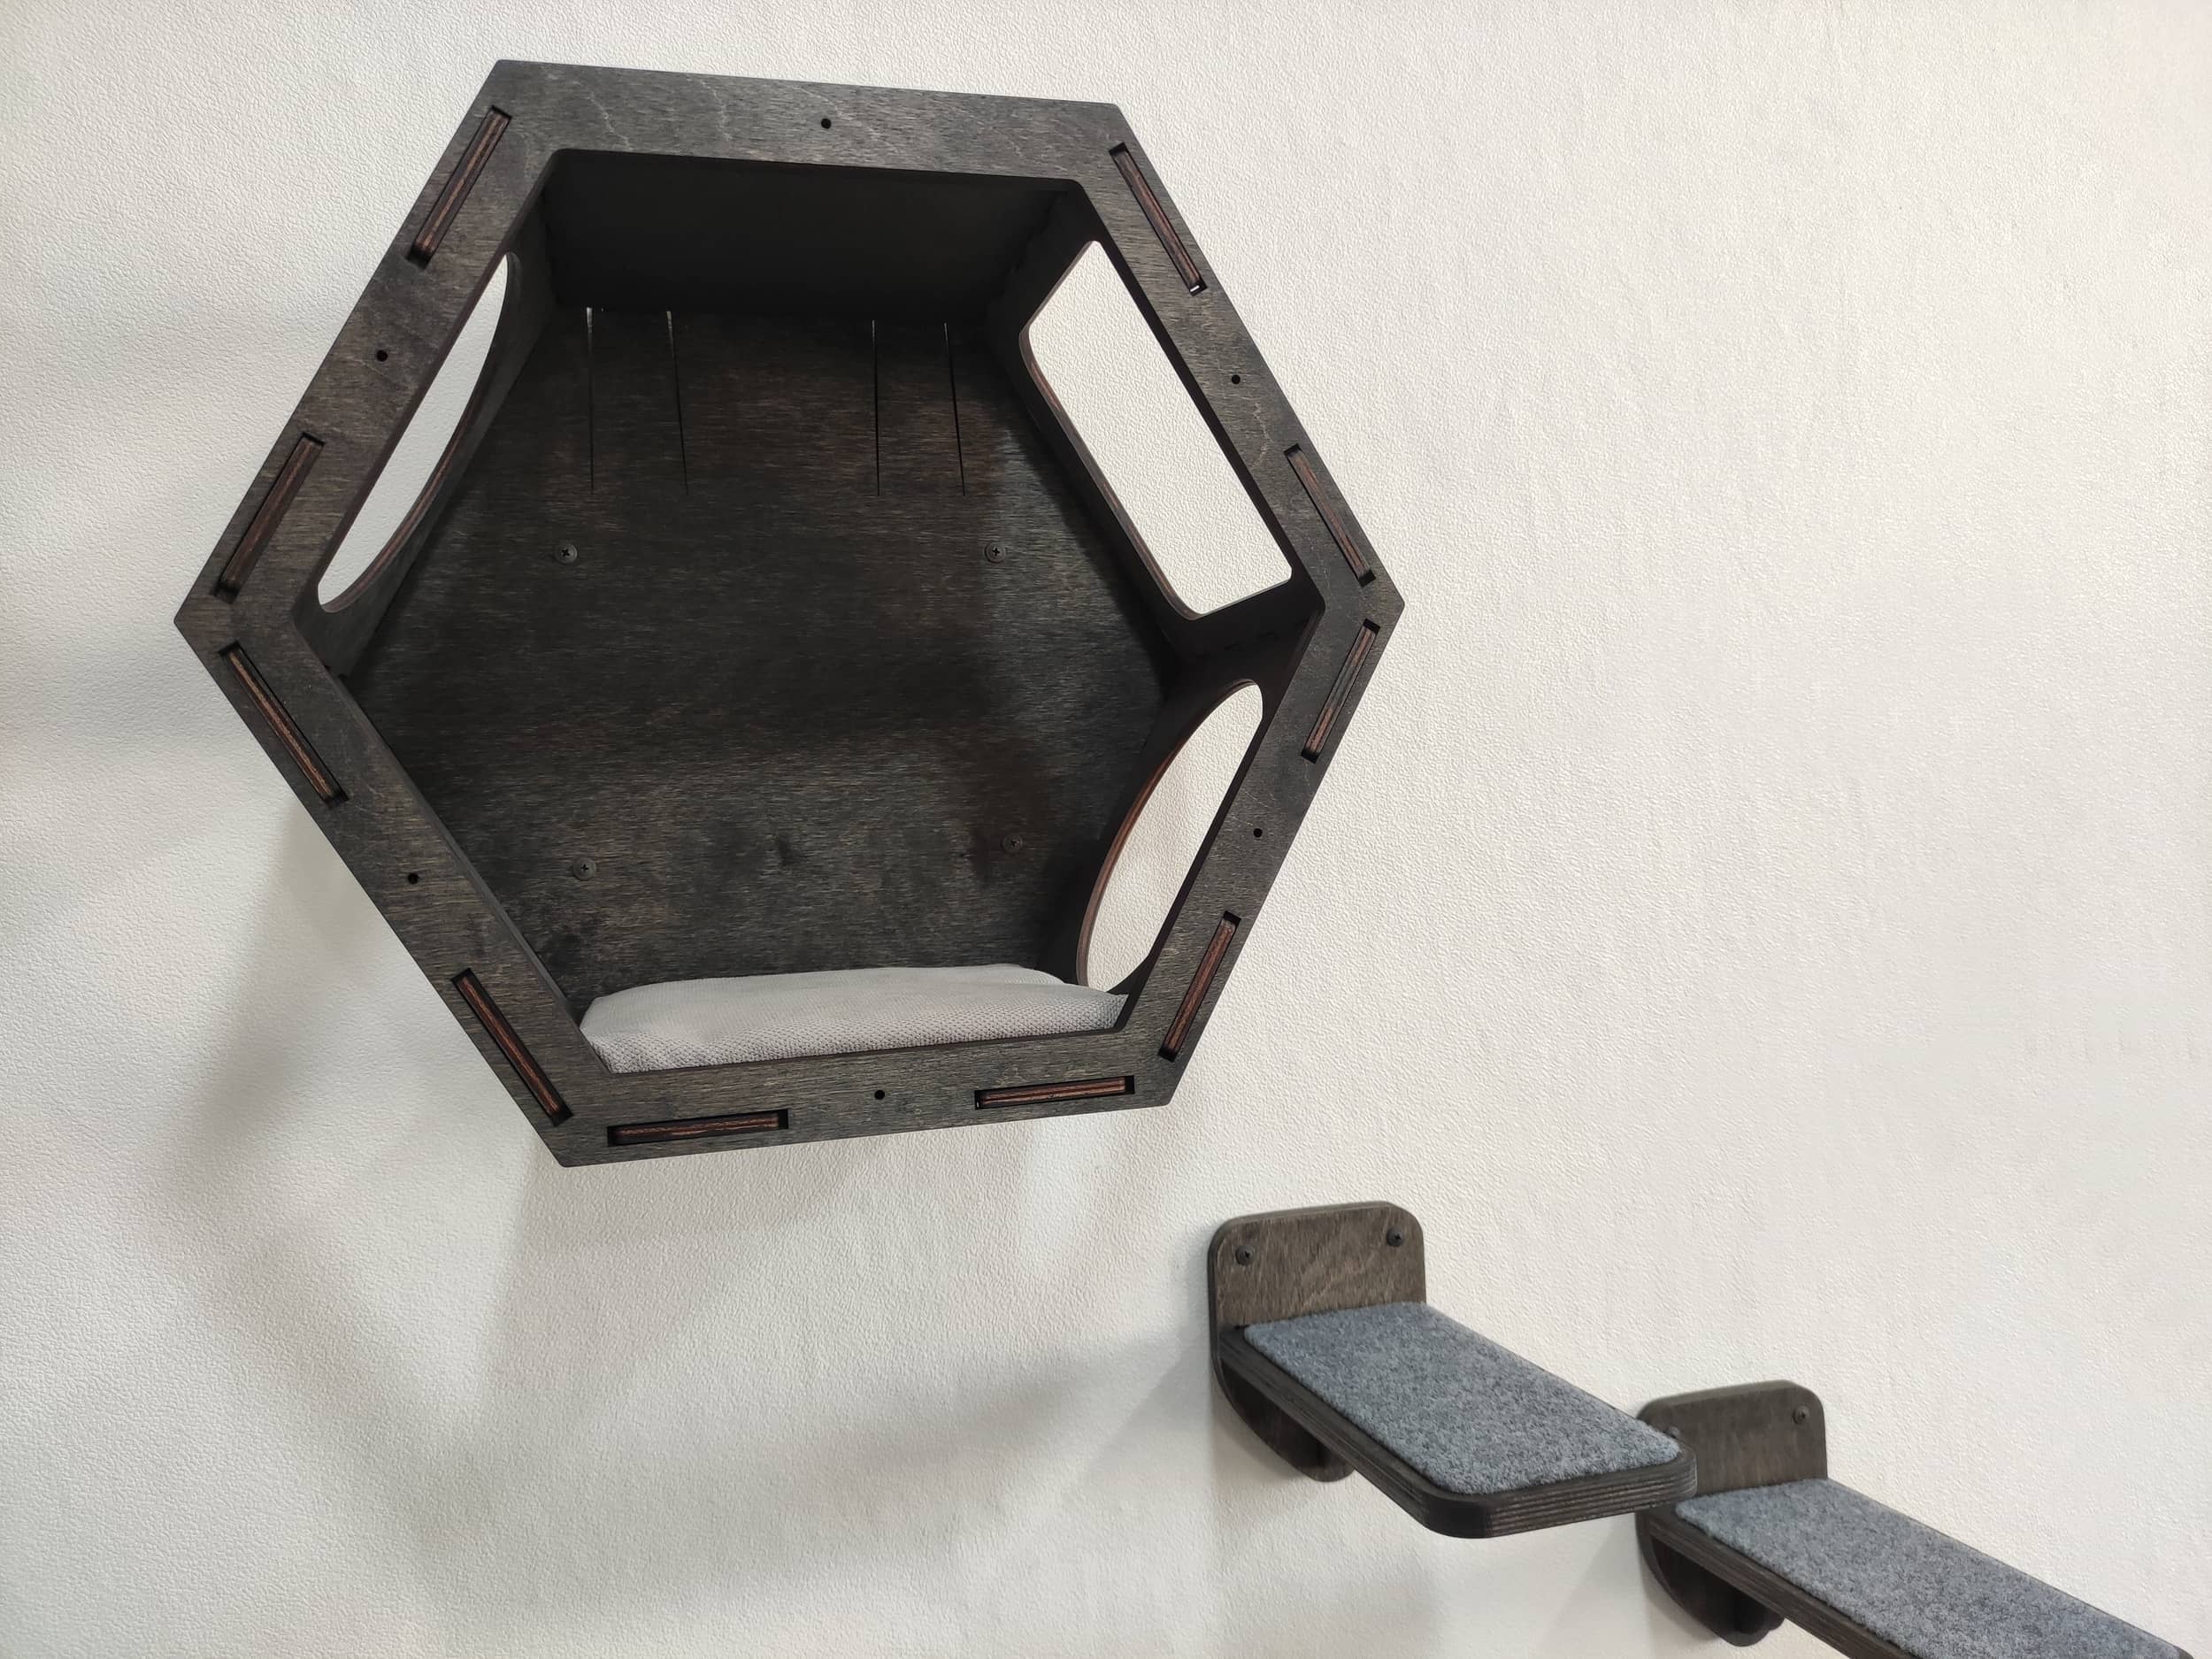 Wall-mounted hexagonal cat shelf